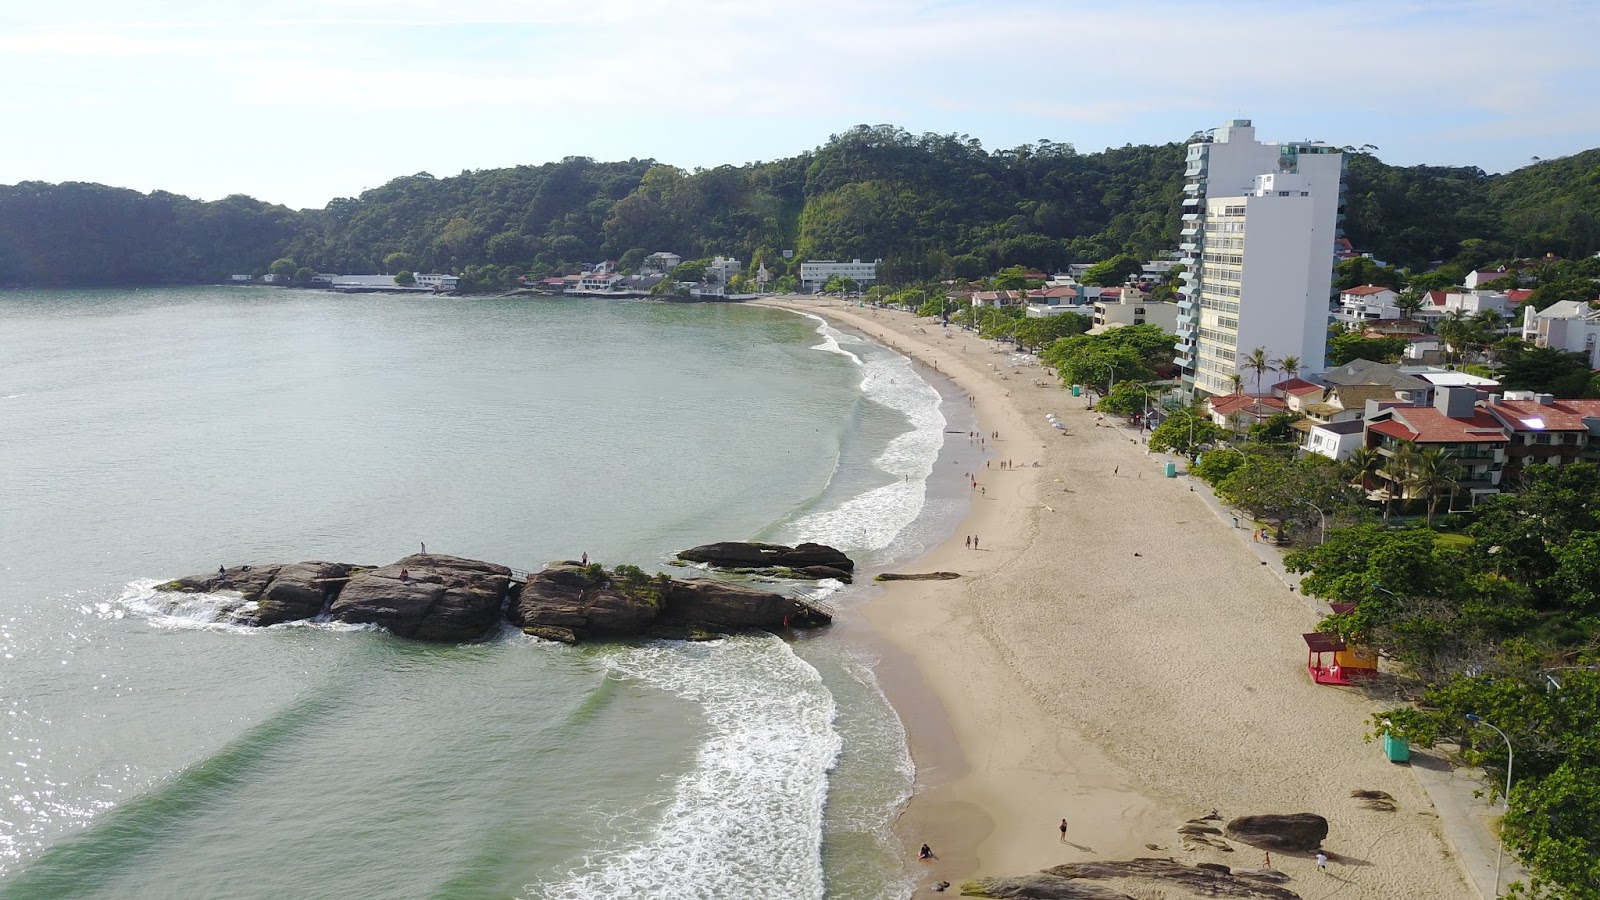 Foto af Praia de Cabecudas - populært sted blandt afslapningskendere